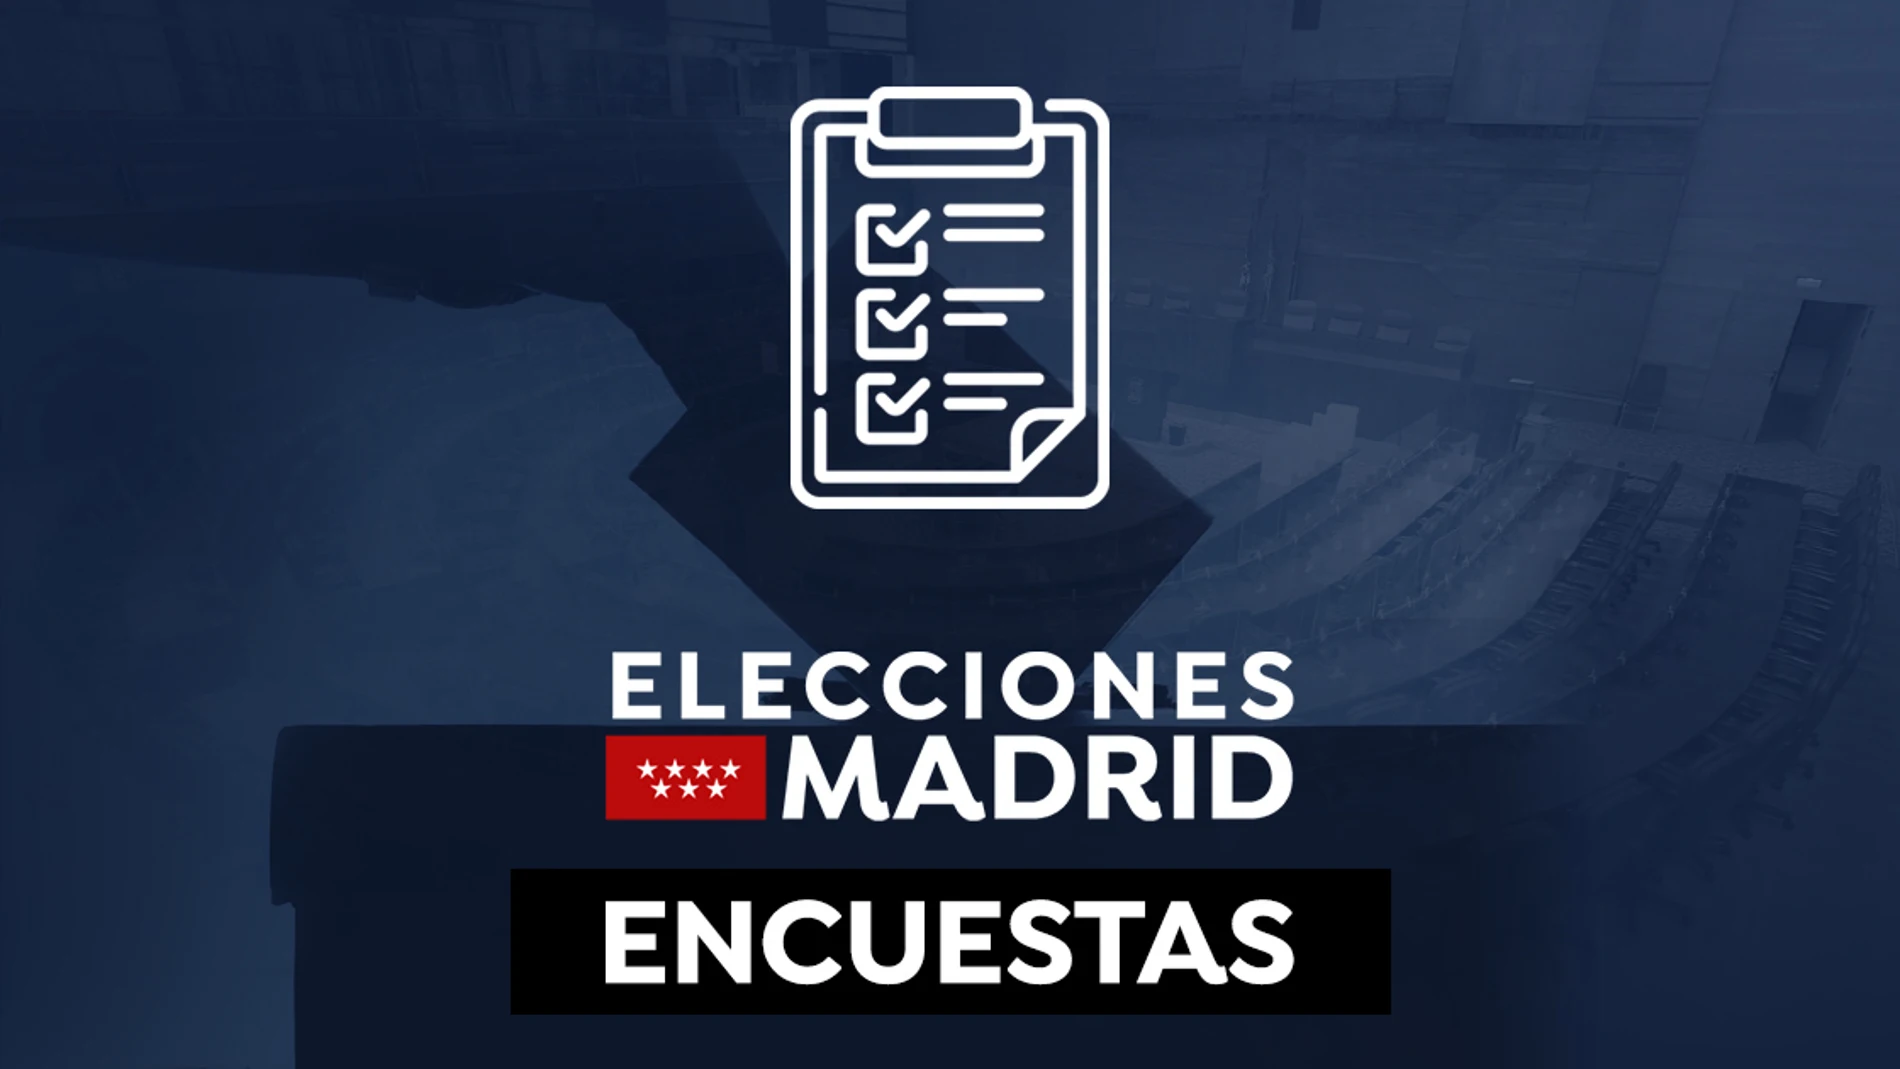 Este será el resultado de las elecciones de Madrid según las últimas encuestas